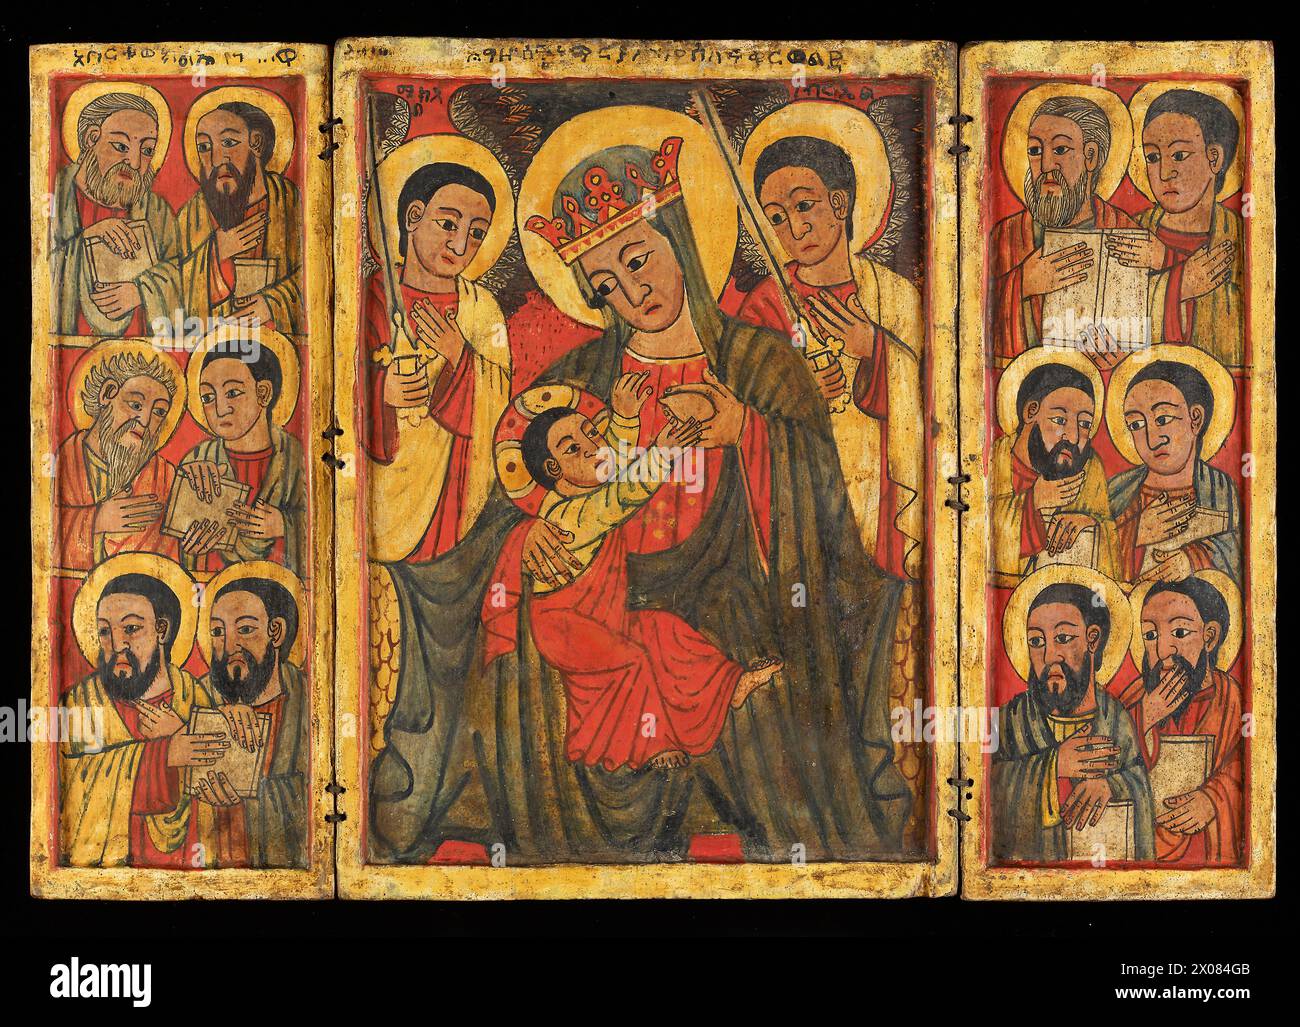 Icon - Äthiopisch-Orthodox - diese äthiopisch-orthodoxe Ikone ist von der Kunst der europäischen Renaissance beeinflusst und zeigt die Jungfrau Maria, die den Säugling Christus pflegt, auf der Mitteltafel. Die Figuren der zwölf Apostel sind in den gegenüberliegenden Seitentafeln dargestellt, die das Triptychon auf die Mitte oder zweite Hälfte des 15. Jahrhunderts datieren. Stockfoto